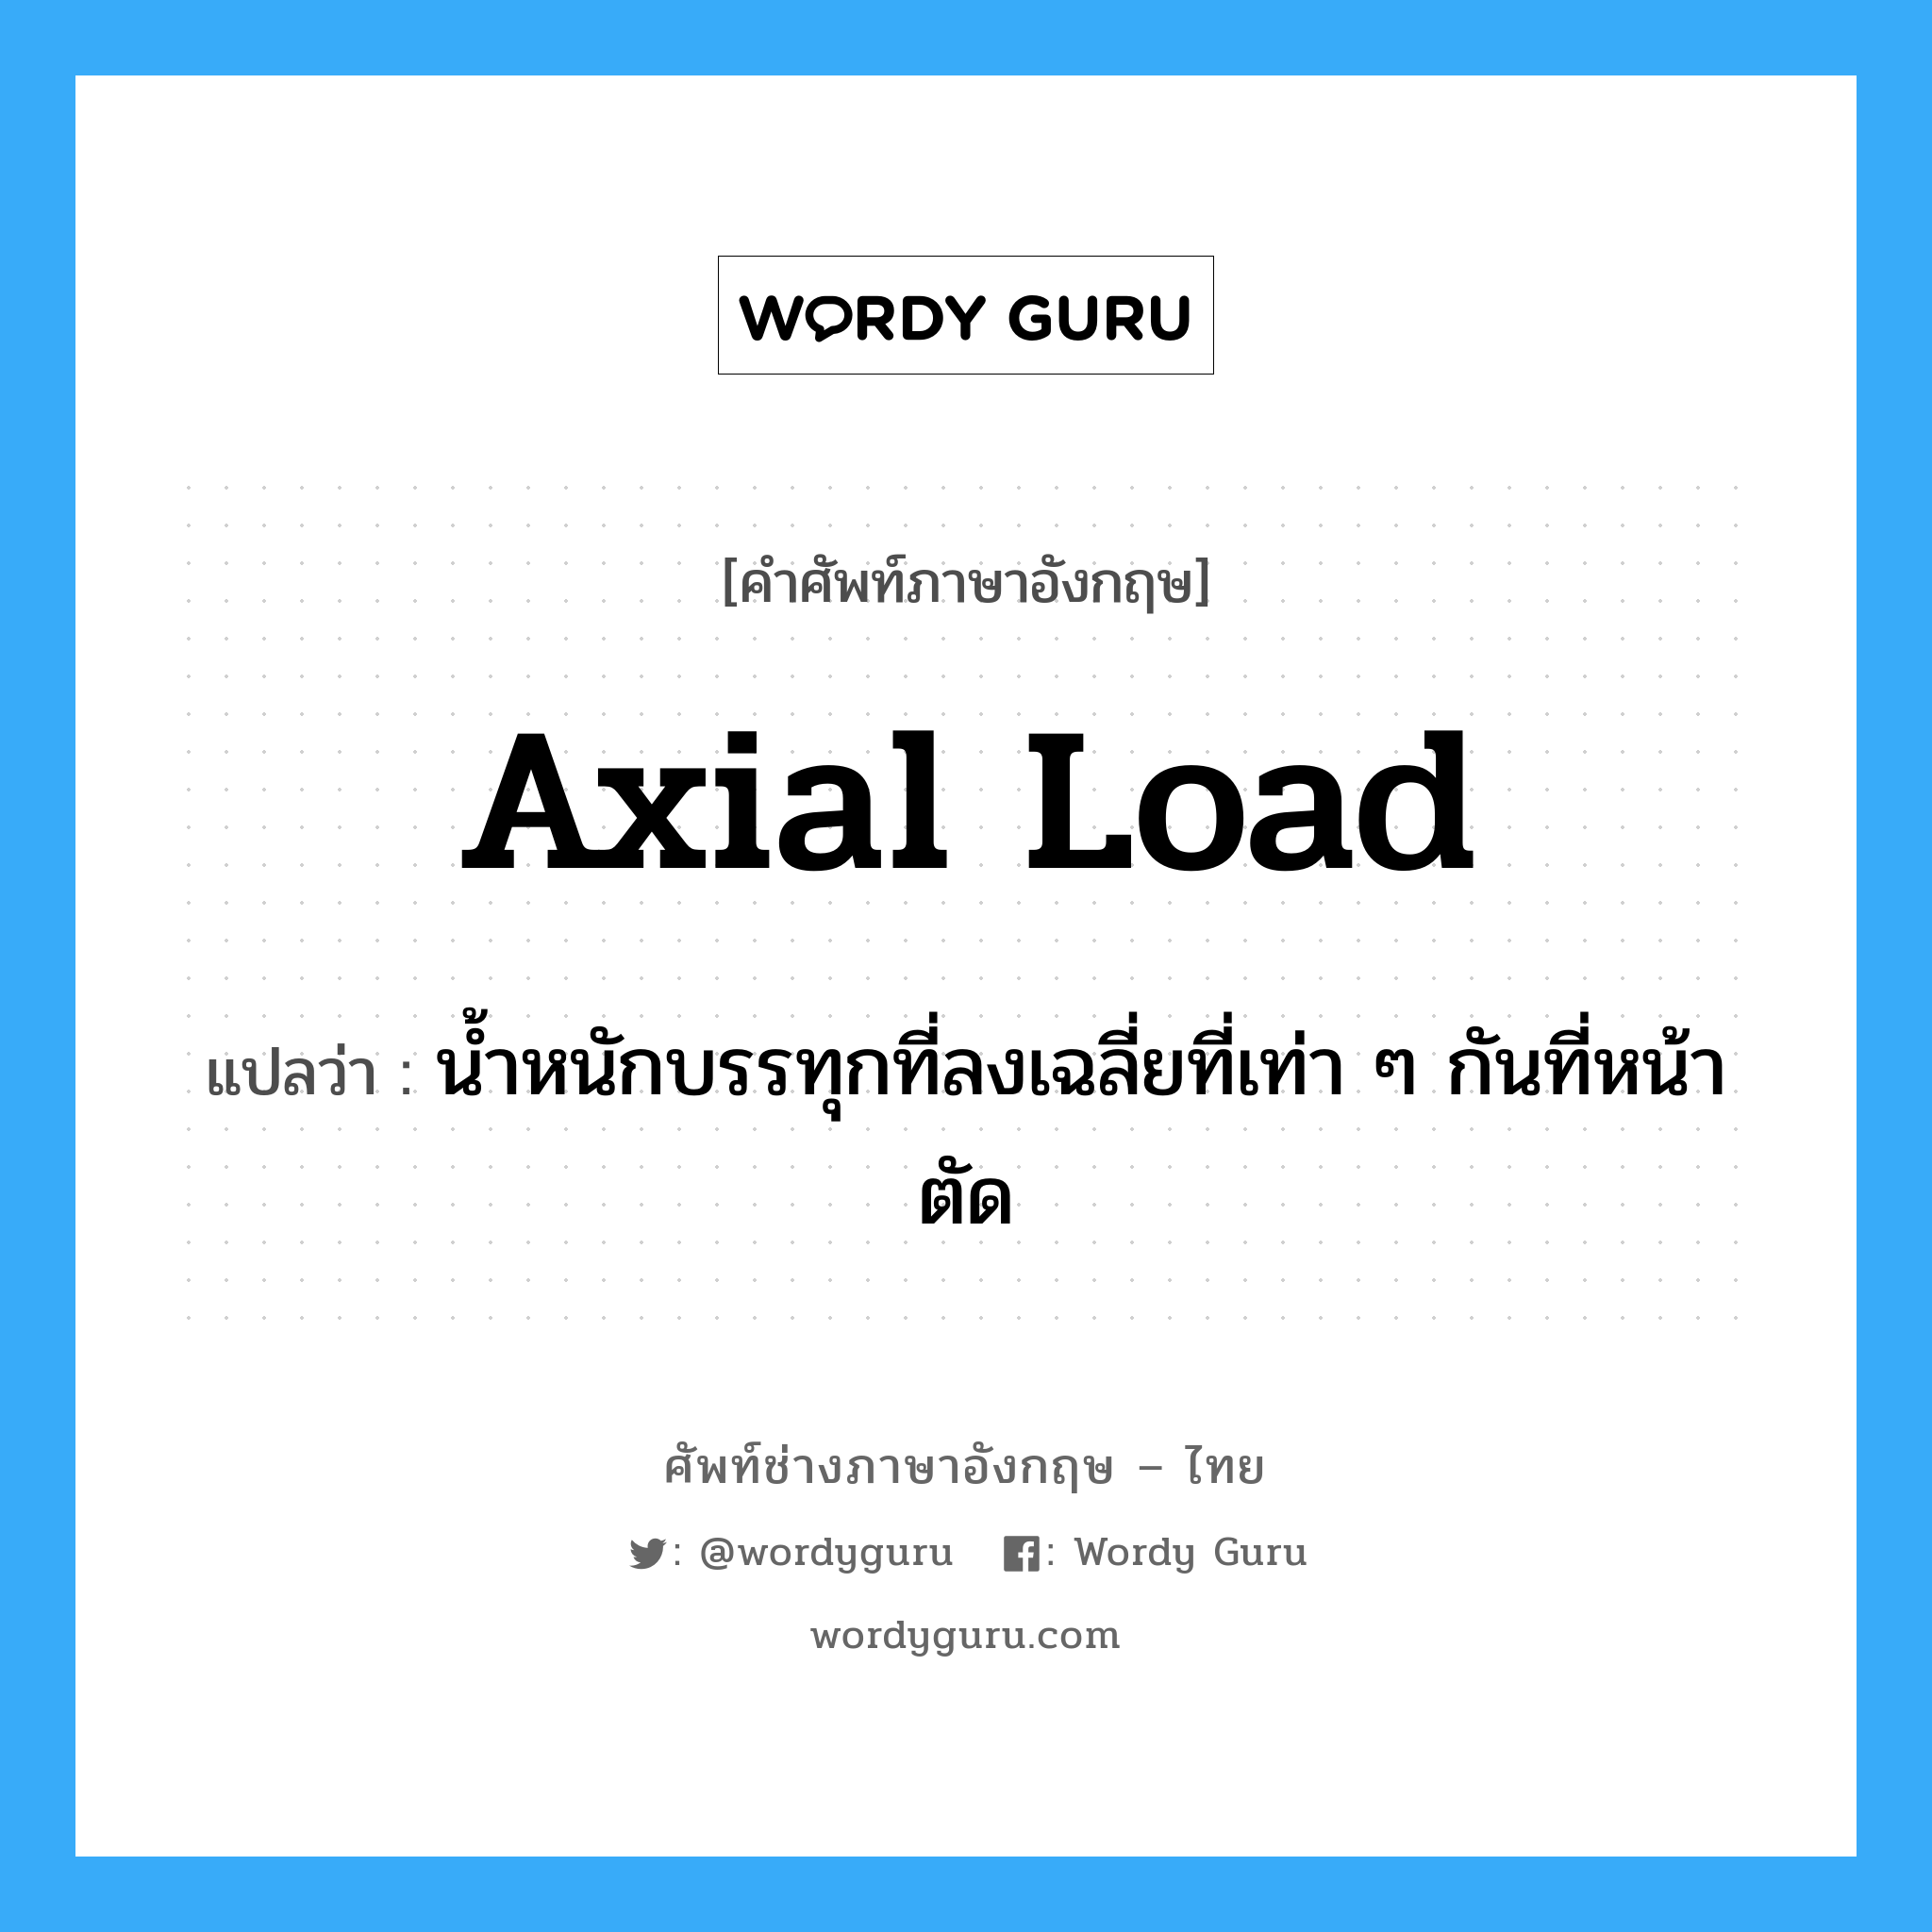 axial load แปลว่า?, คำศัพท์ช่างภาษาอังกฤษ - ไทย axial load คำศัพท์ภาษาอังกฤษ axial load แปลว่า น้ำหนักบรรทุกที่ลงเฉลี่ยที่เท่า ๆ กันที่หน้าตัด